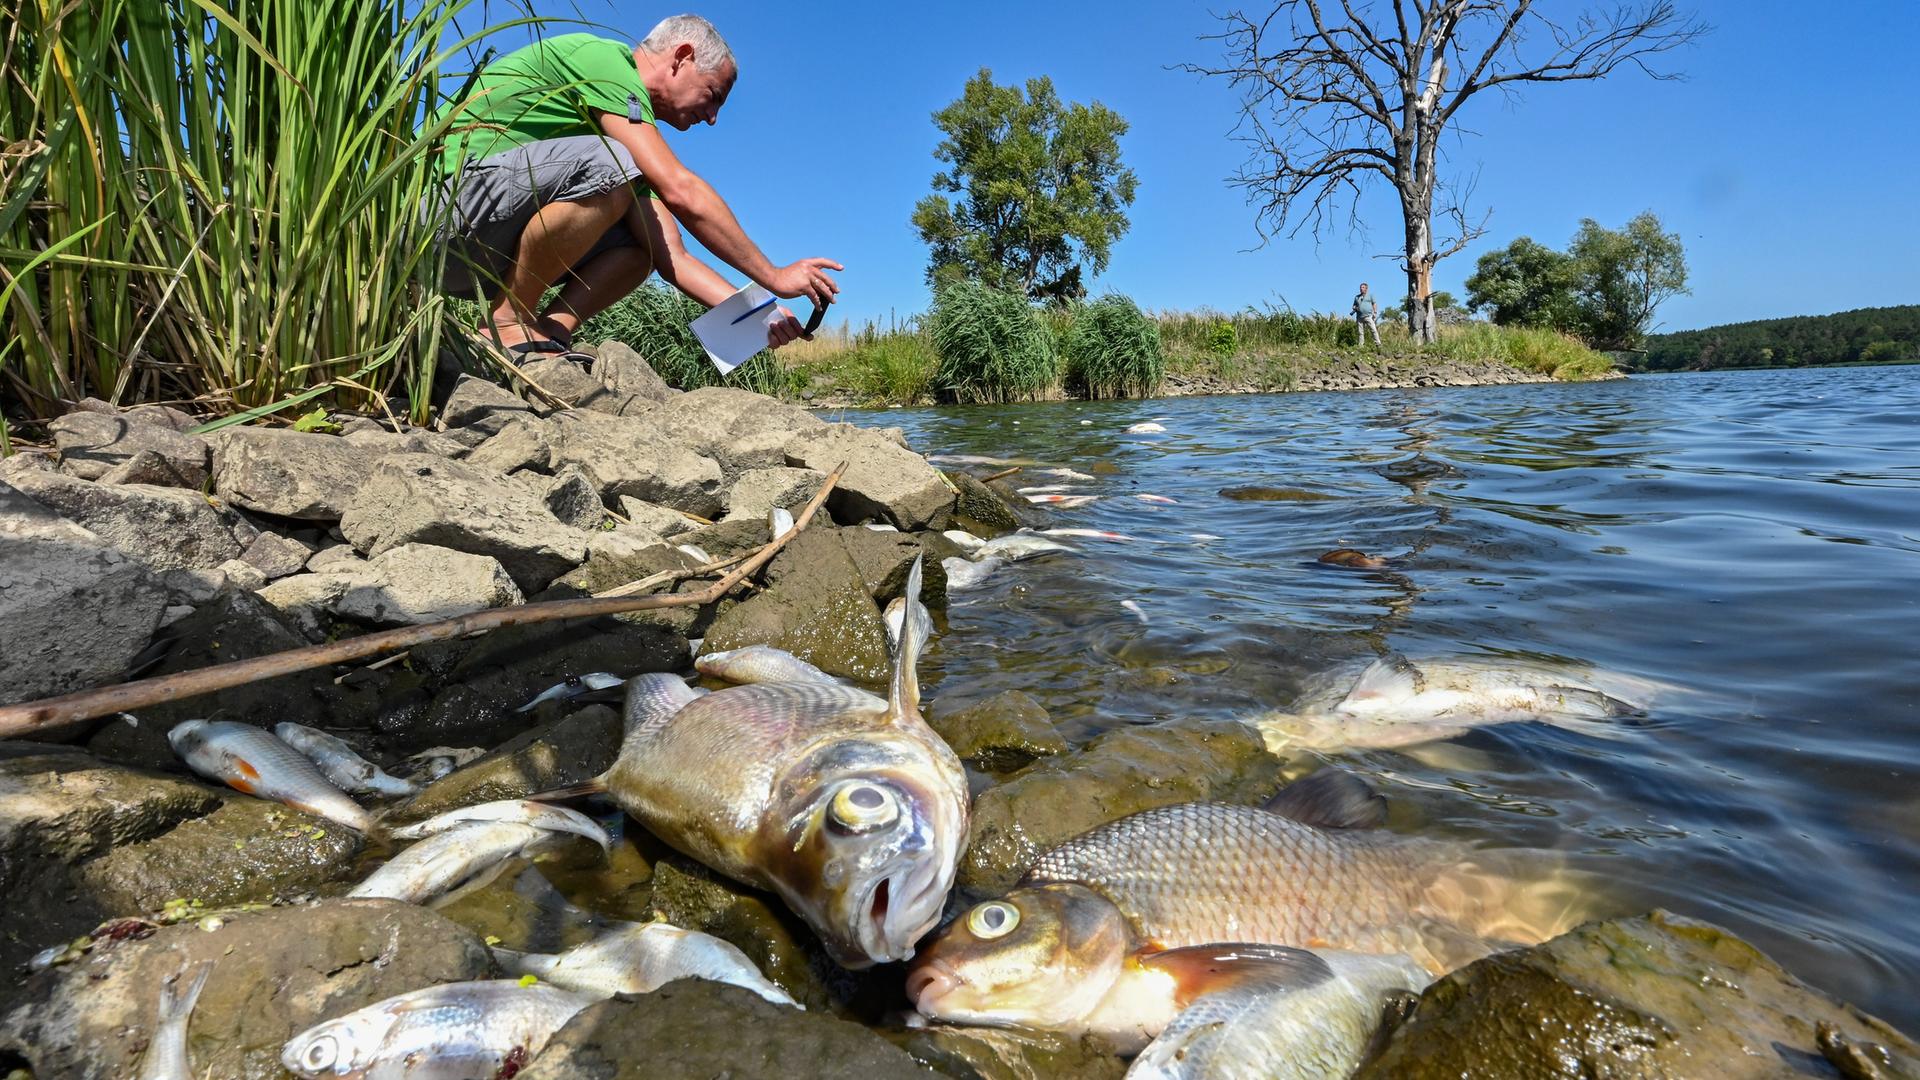 Viele tote Fische treiben im Wasser des deutsch-polnischen Grenzflusses Oder im Nationalpark Unteres Odertal nördlich der Stadt Schwedt. Das Fischsterben in der Oder ist laut polnischer Umweltschutzbehörde wahrscheinlich von einer Wasserverschmutzung durch die Industrie ausgelöst worden.